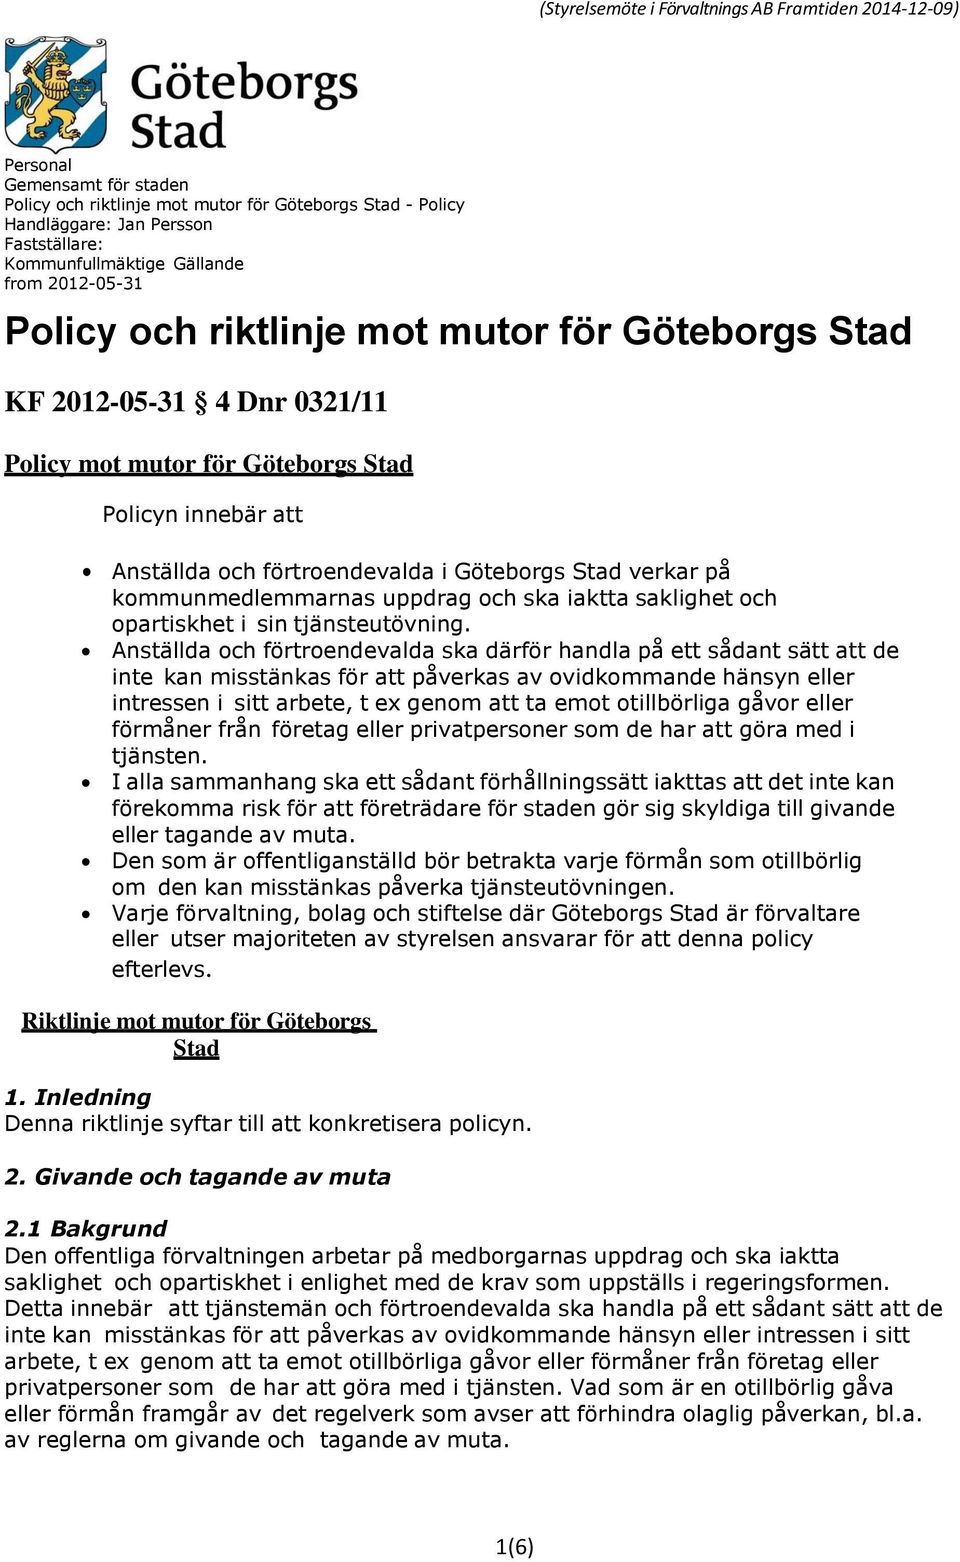 Göteborgs Stad verkar på kommunmedlemmarnas uppdrag och ska iaktta saklighet och opartiskhet i sin tjänsteutövning.